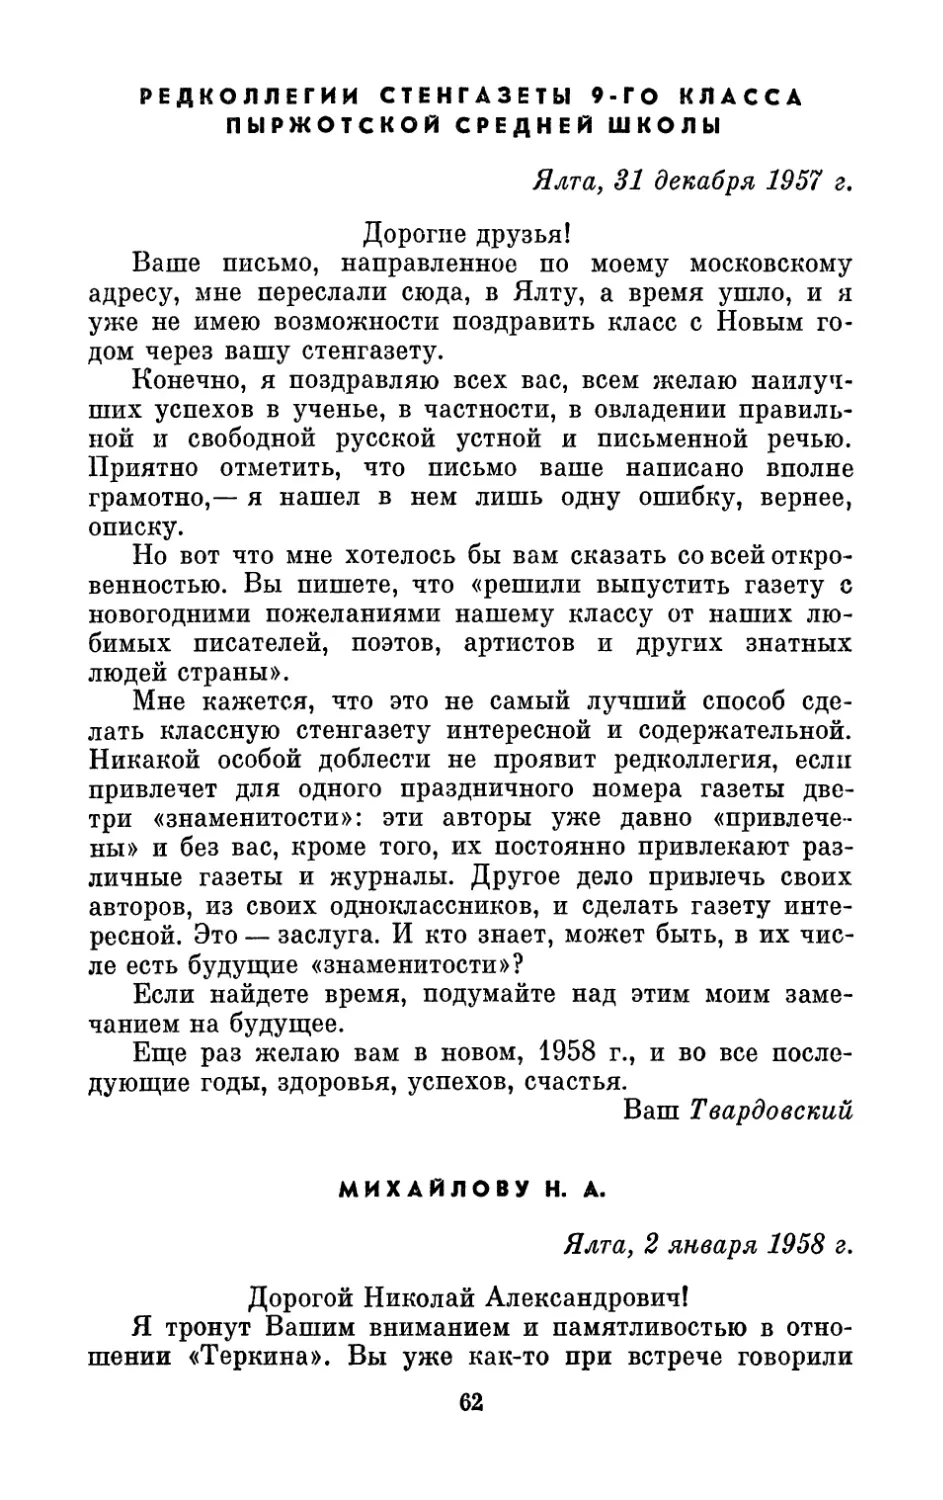 Редколлегии стенгазеты 9 класса Пыржотской школы, 31 декабря 1957 г.
Михайлову Н. А., 2 января 1958 г.